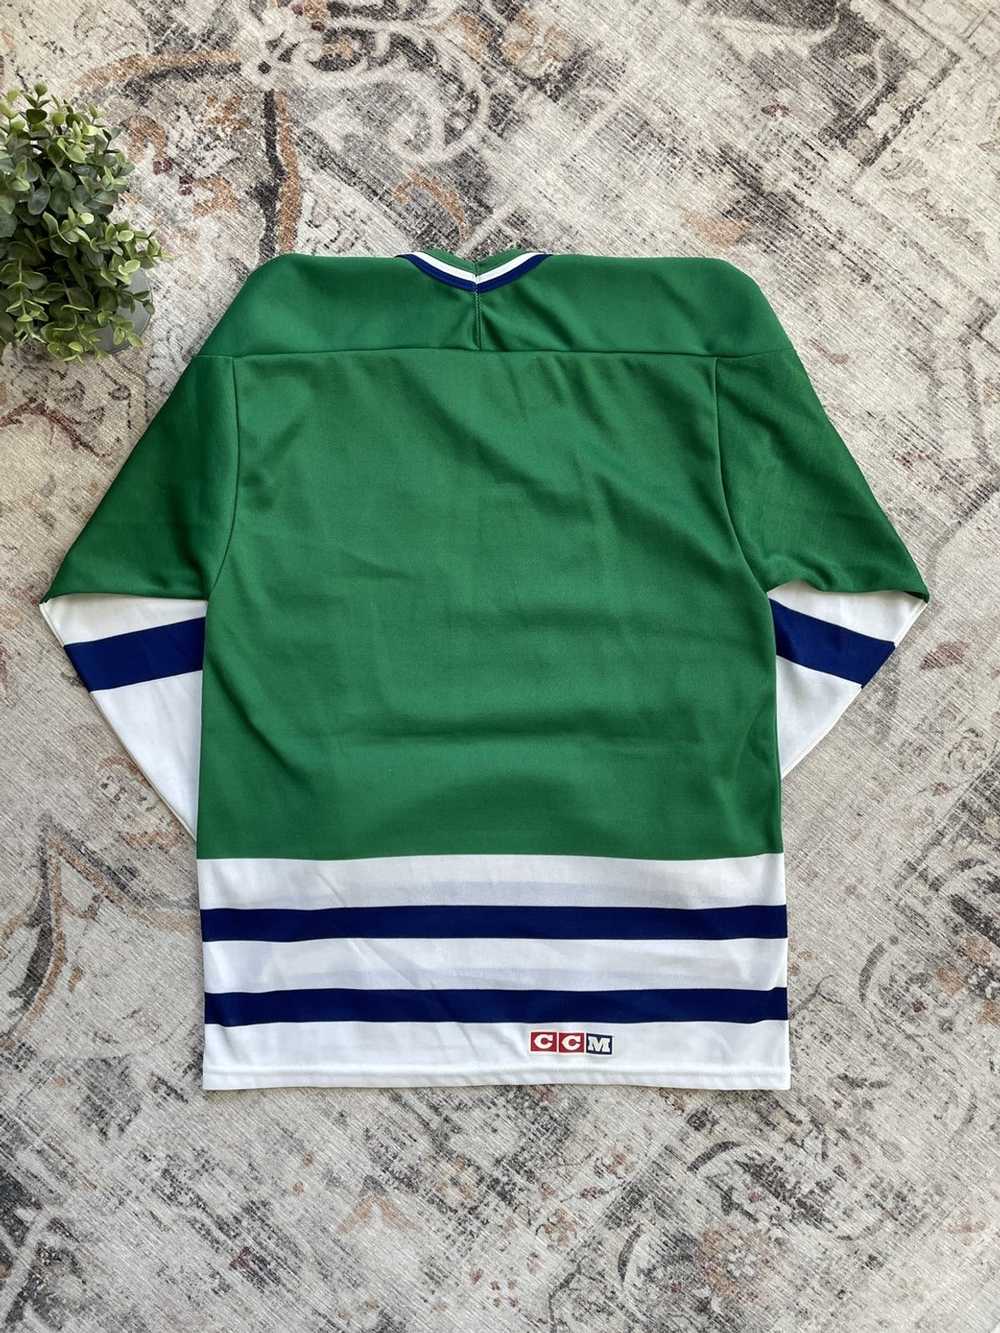 Hockey Jersey × NHL × Vintage Vintage 90s Hartfor… - image 6